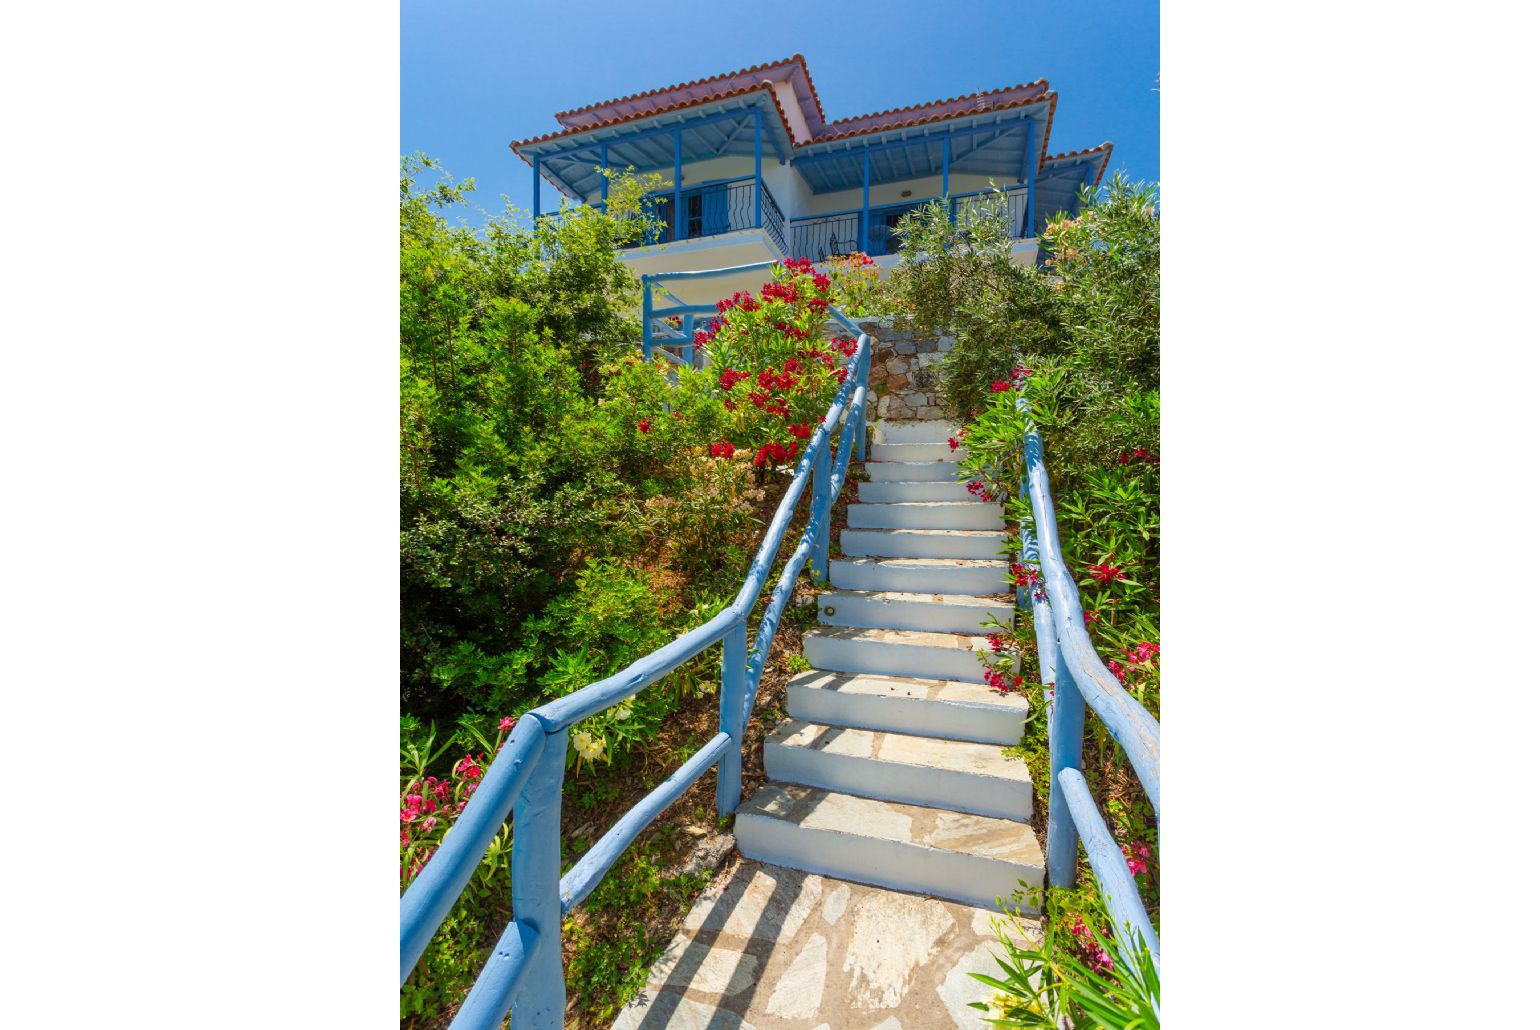 Stairway between villa and pool terrace